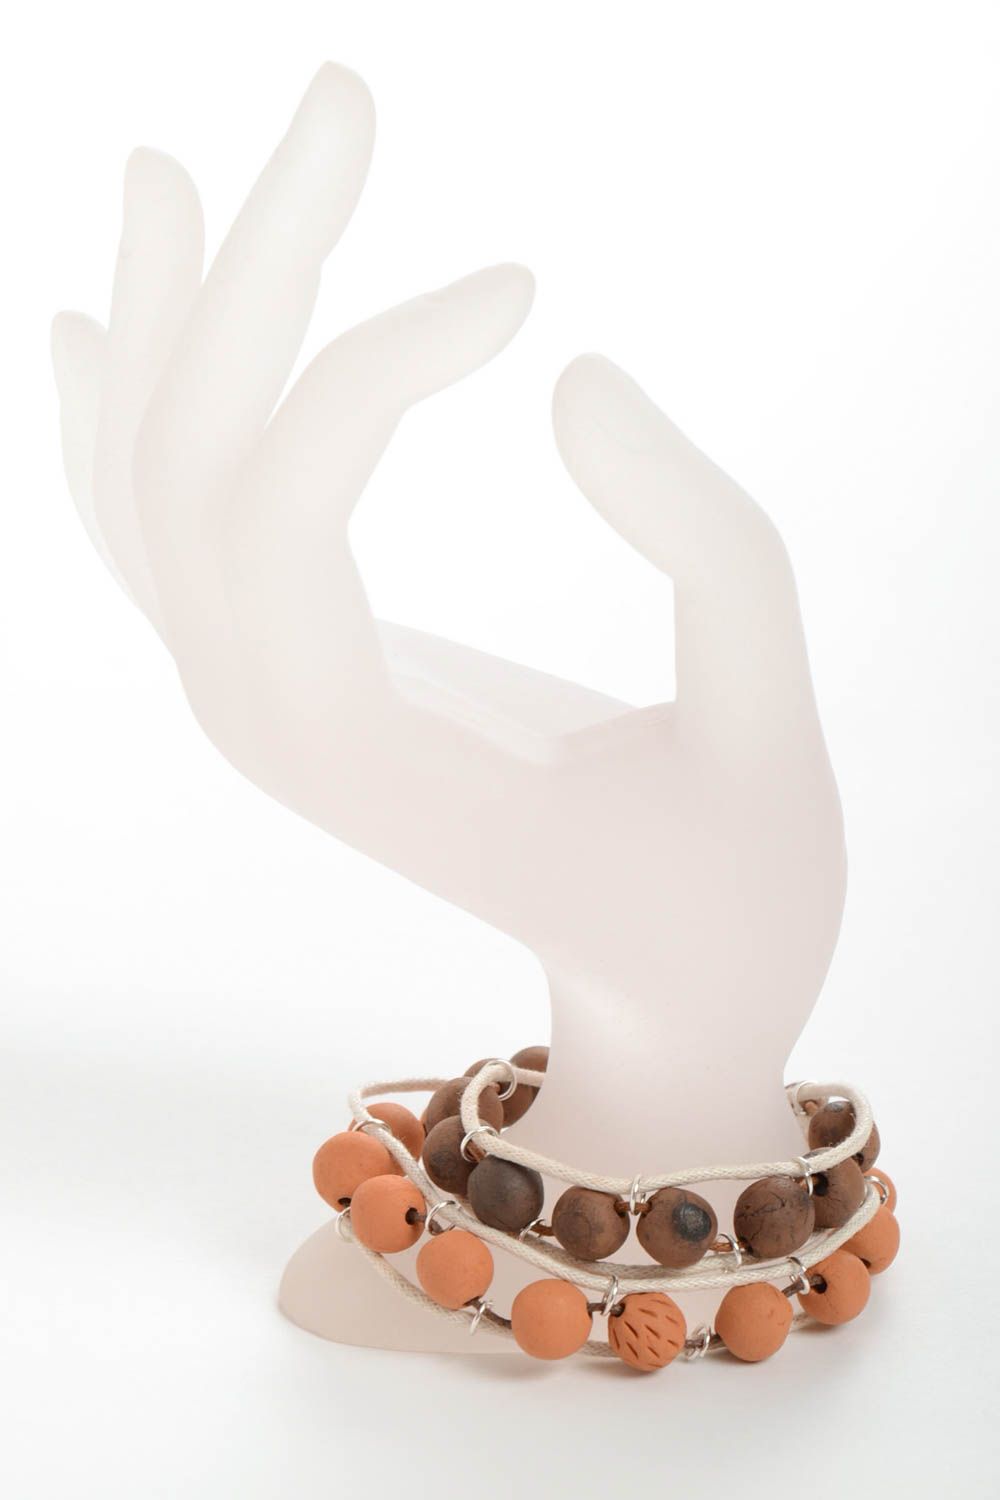 Глиняные браслеты ручной работы оригинального дизайна на вощеном шнурке 2 штуки фото 1